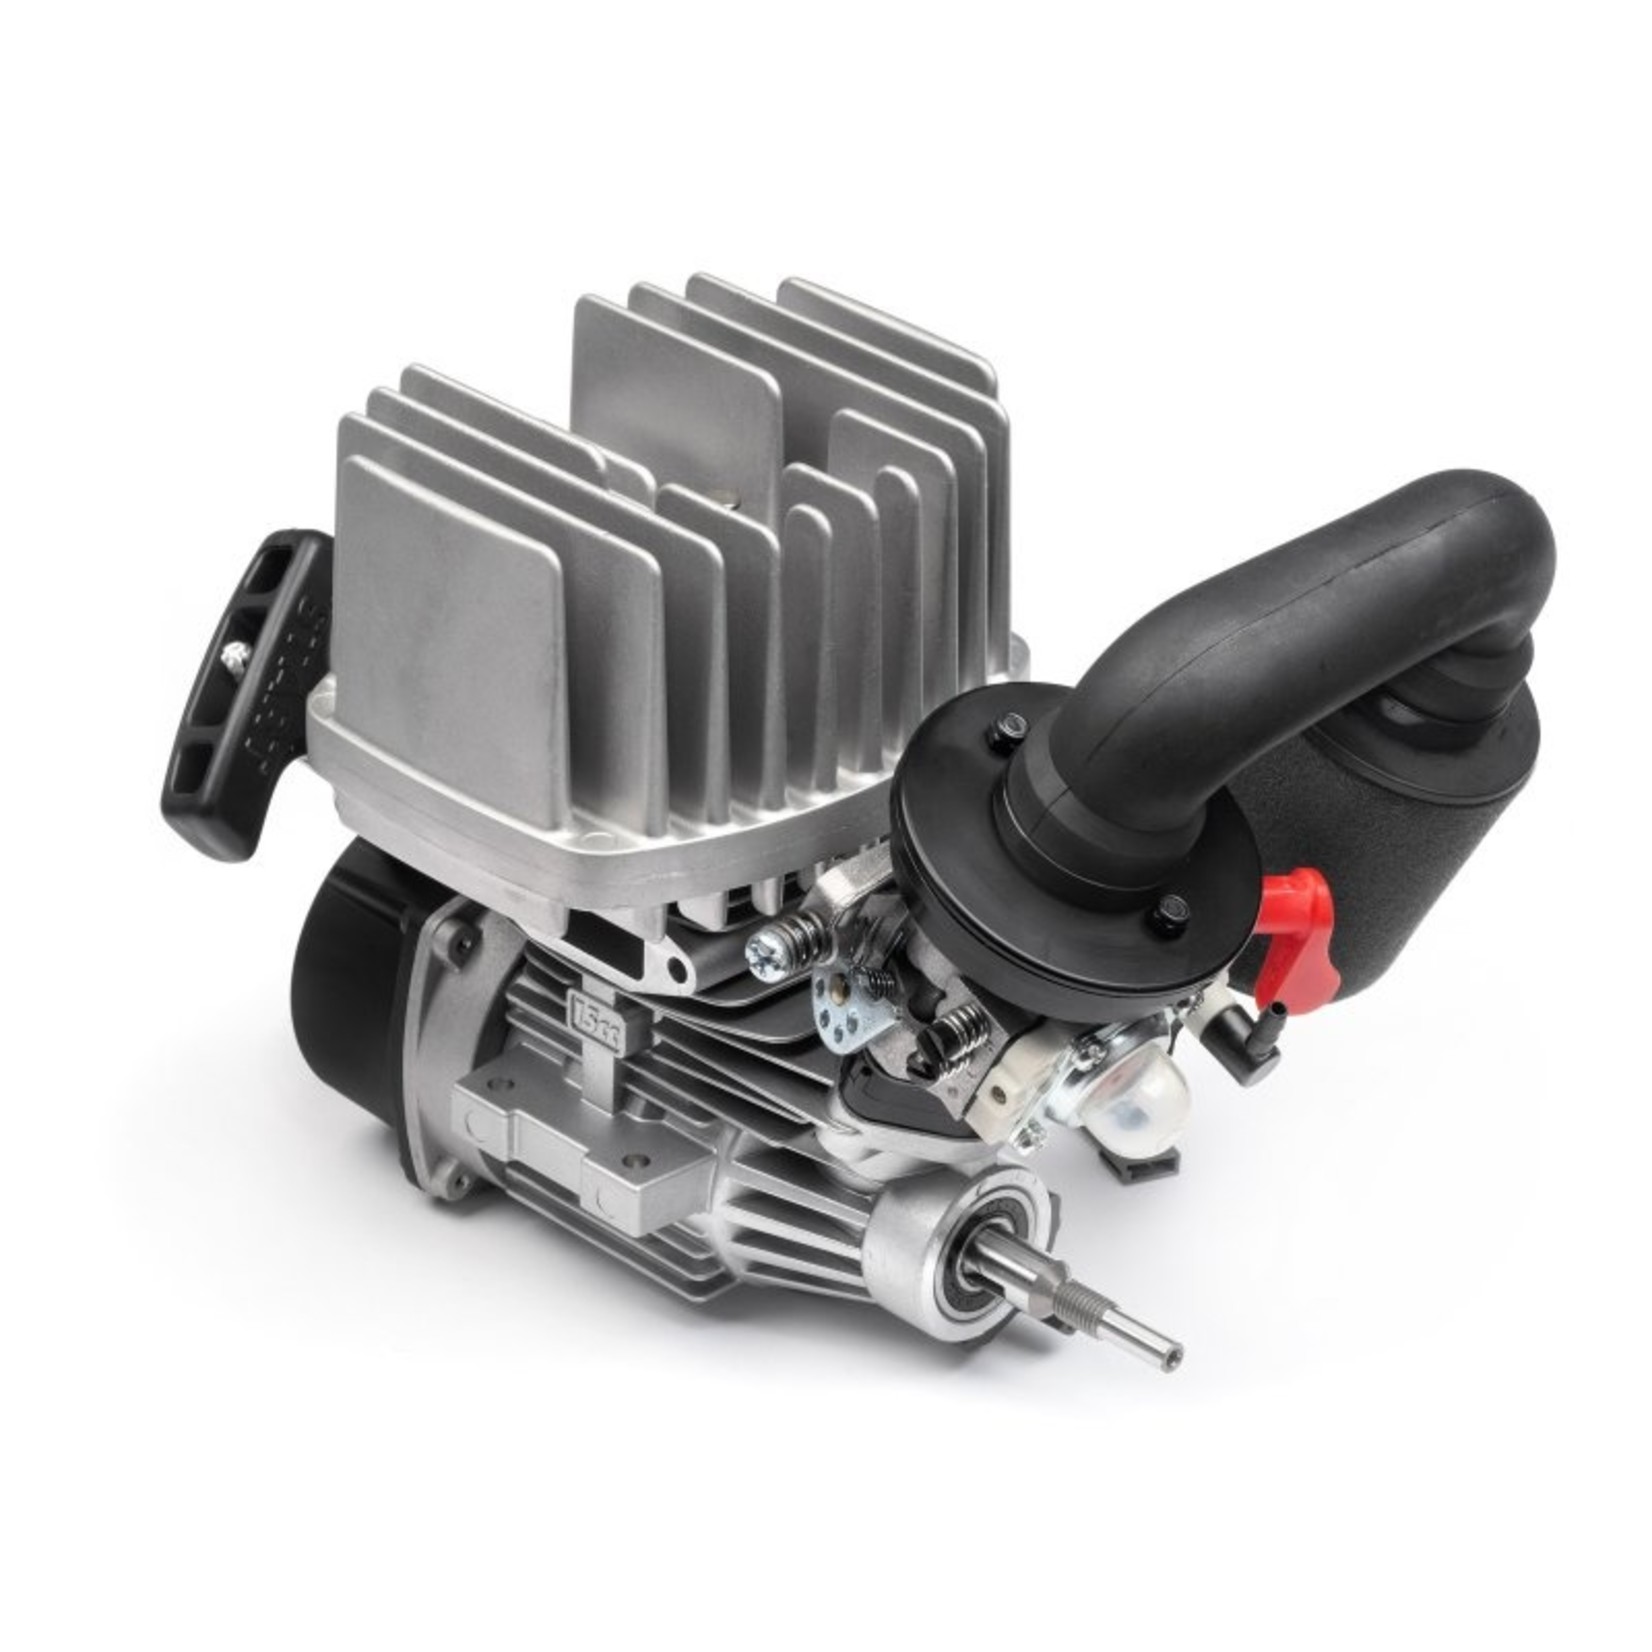 HPI Racing Octane 15cc Engine